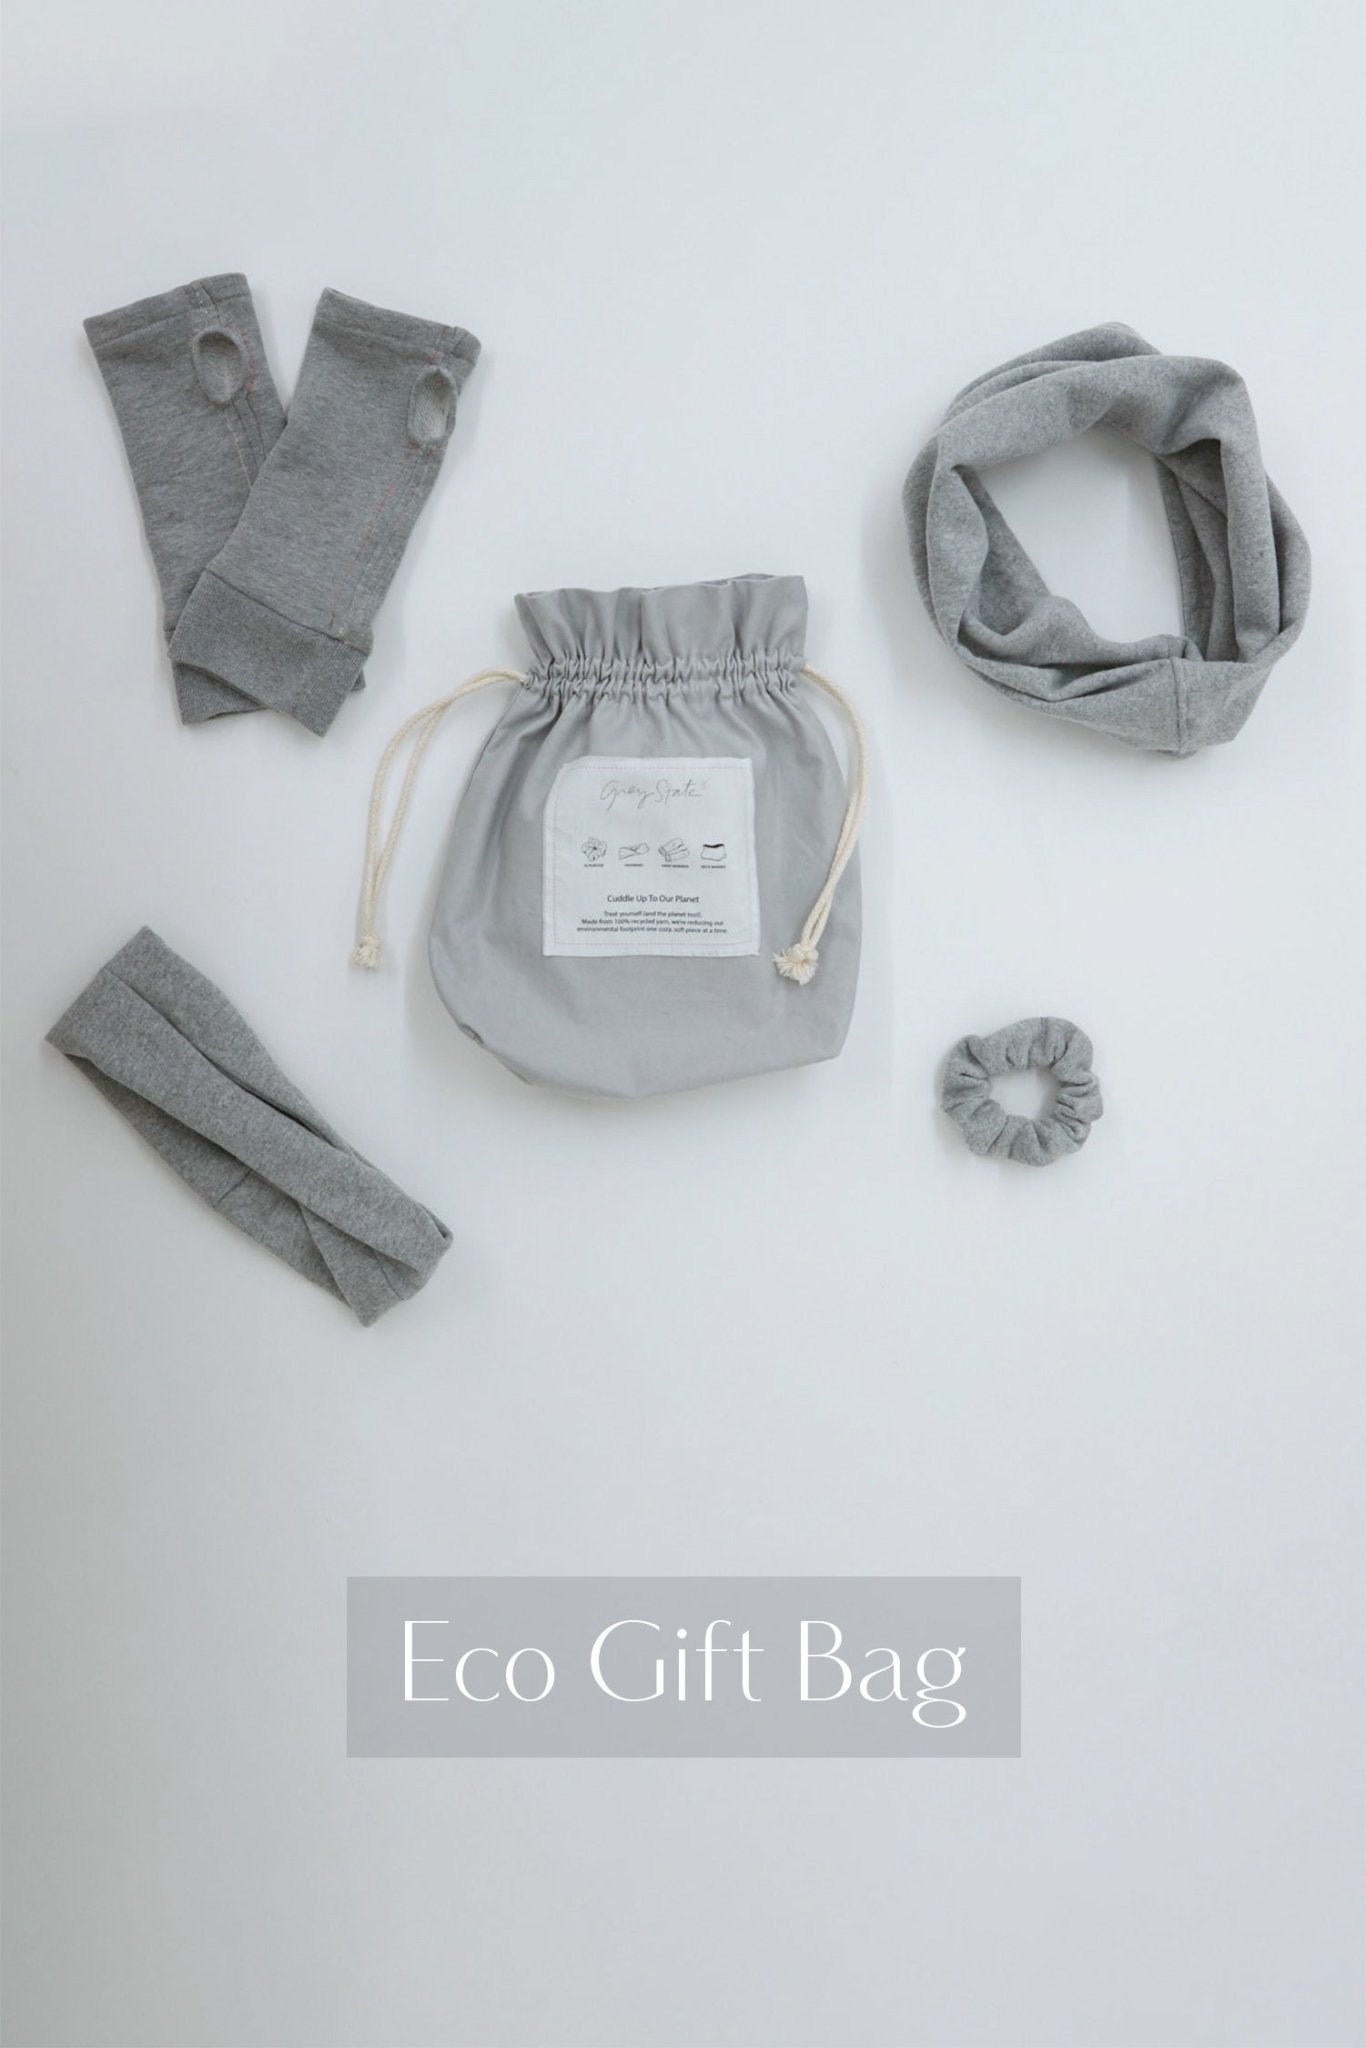 Eco Gift Bag - The Posh Loft